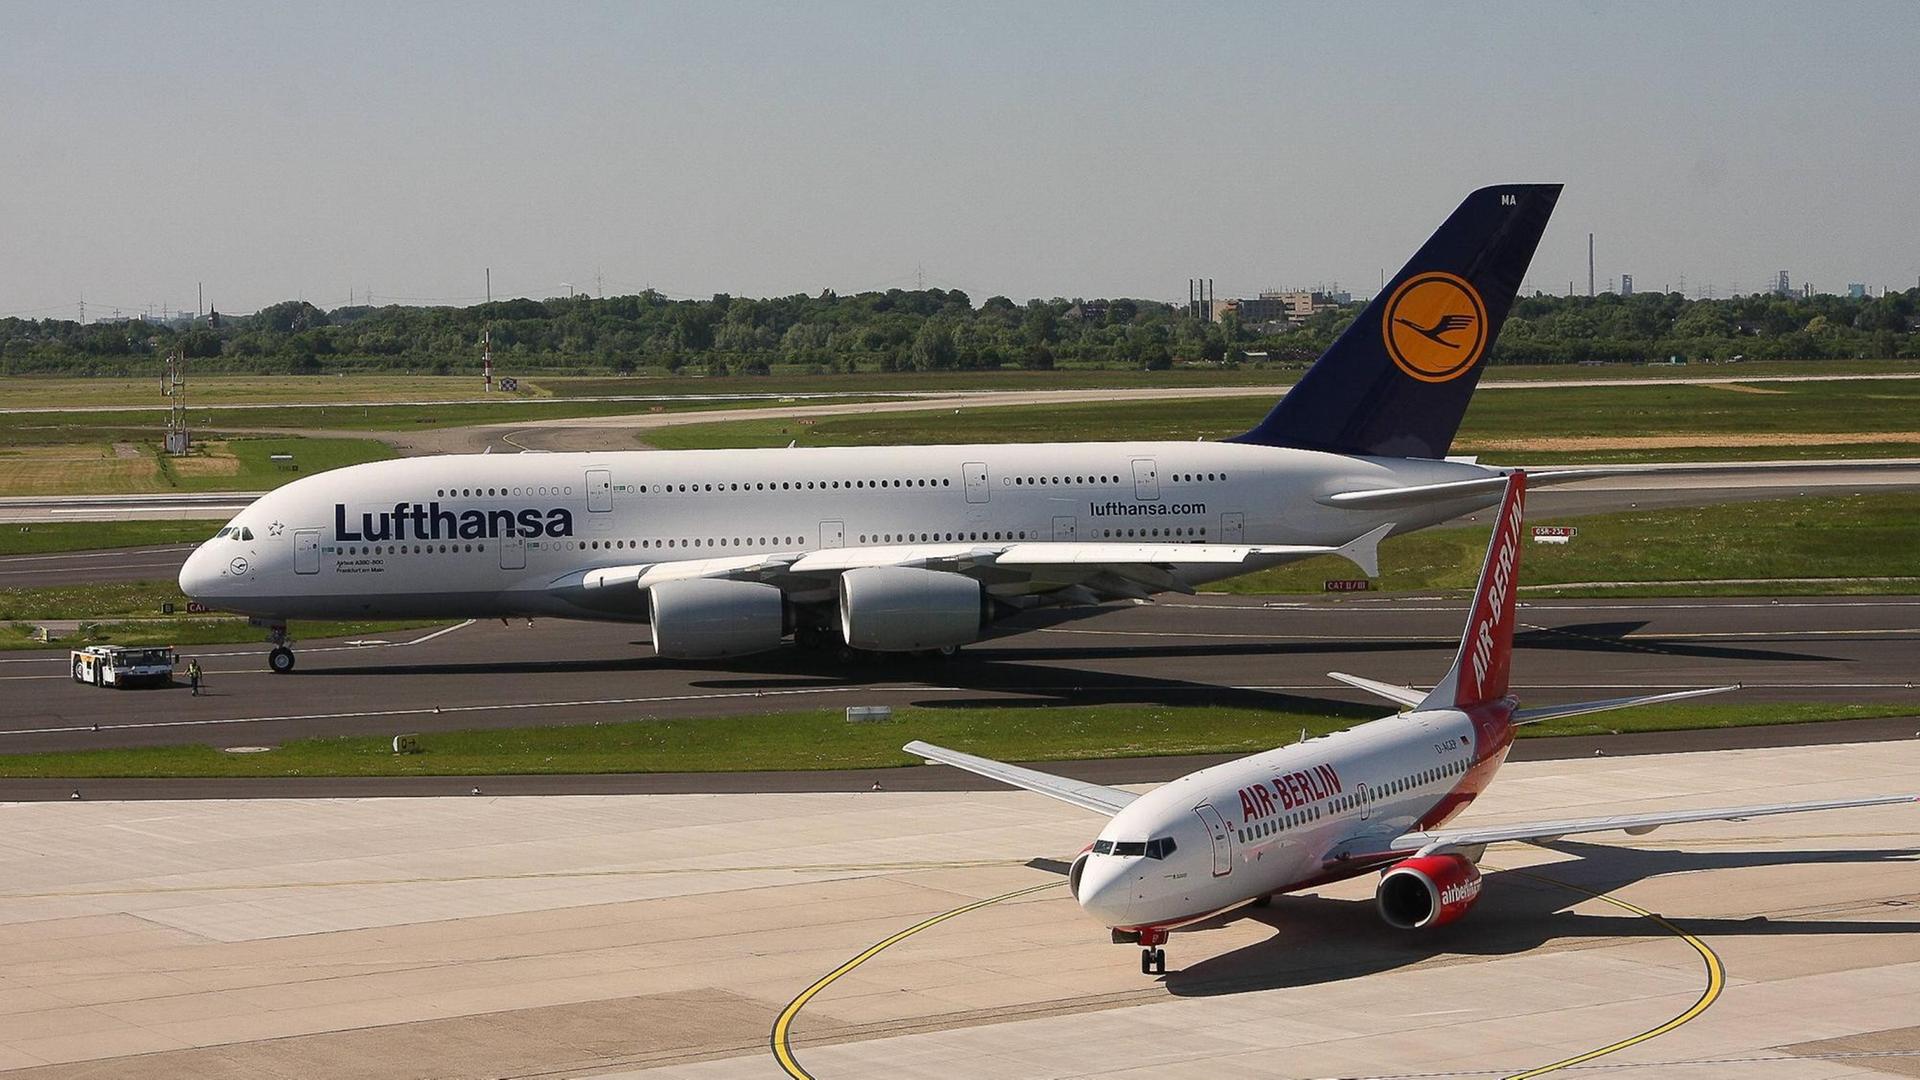 Ein Airbus A380-841 der Lufthansa neben einer Boeing 737-75B von Air Berlin auf dem Düsseldorfer Flughafen.